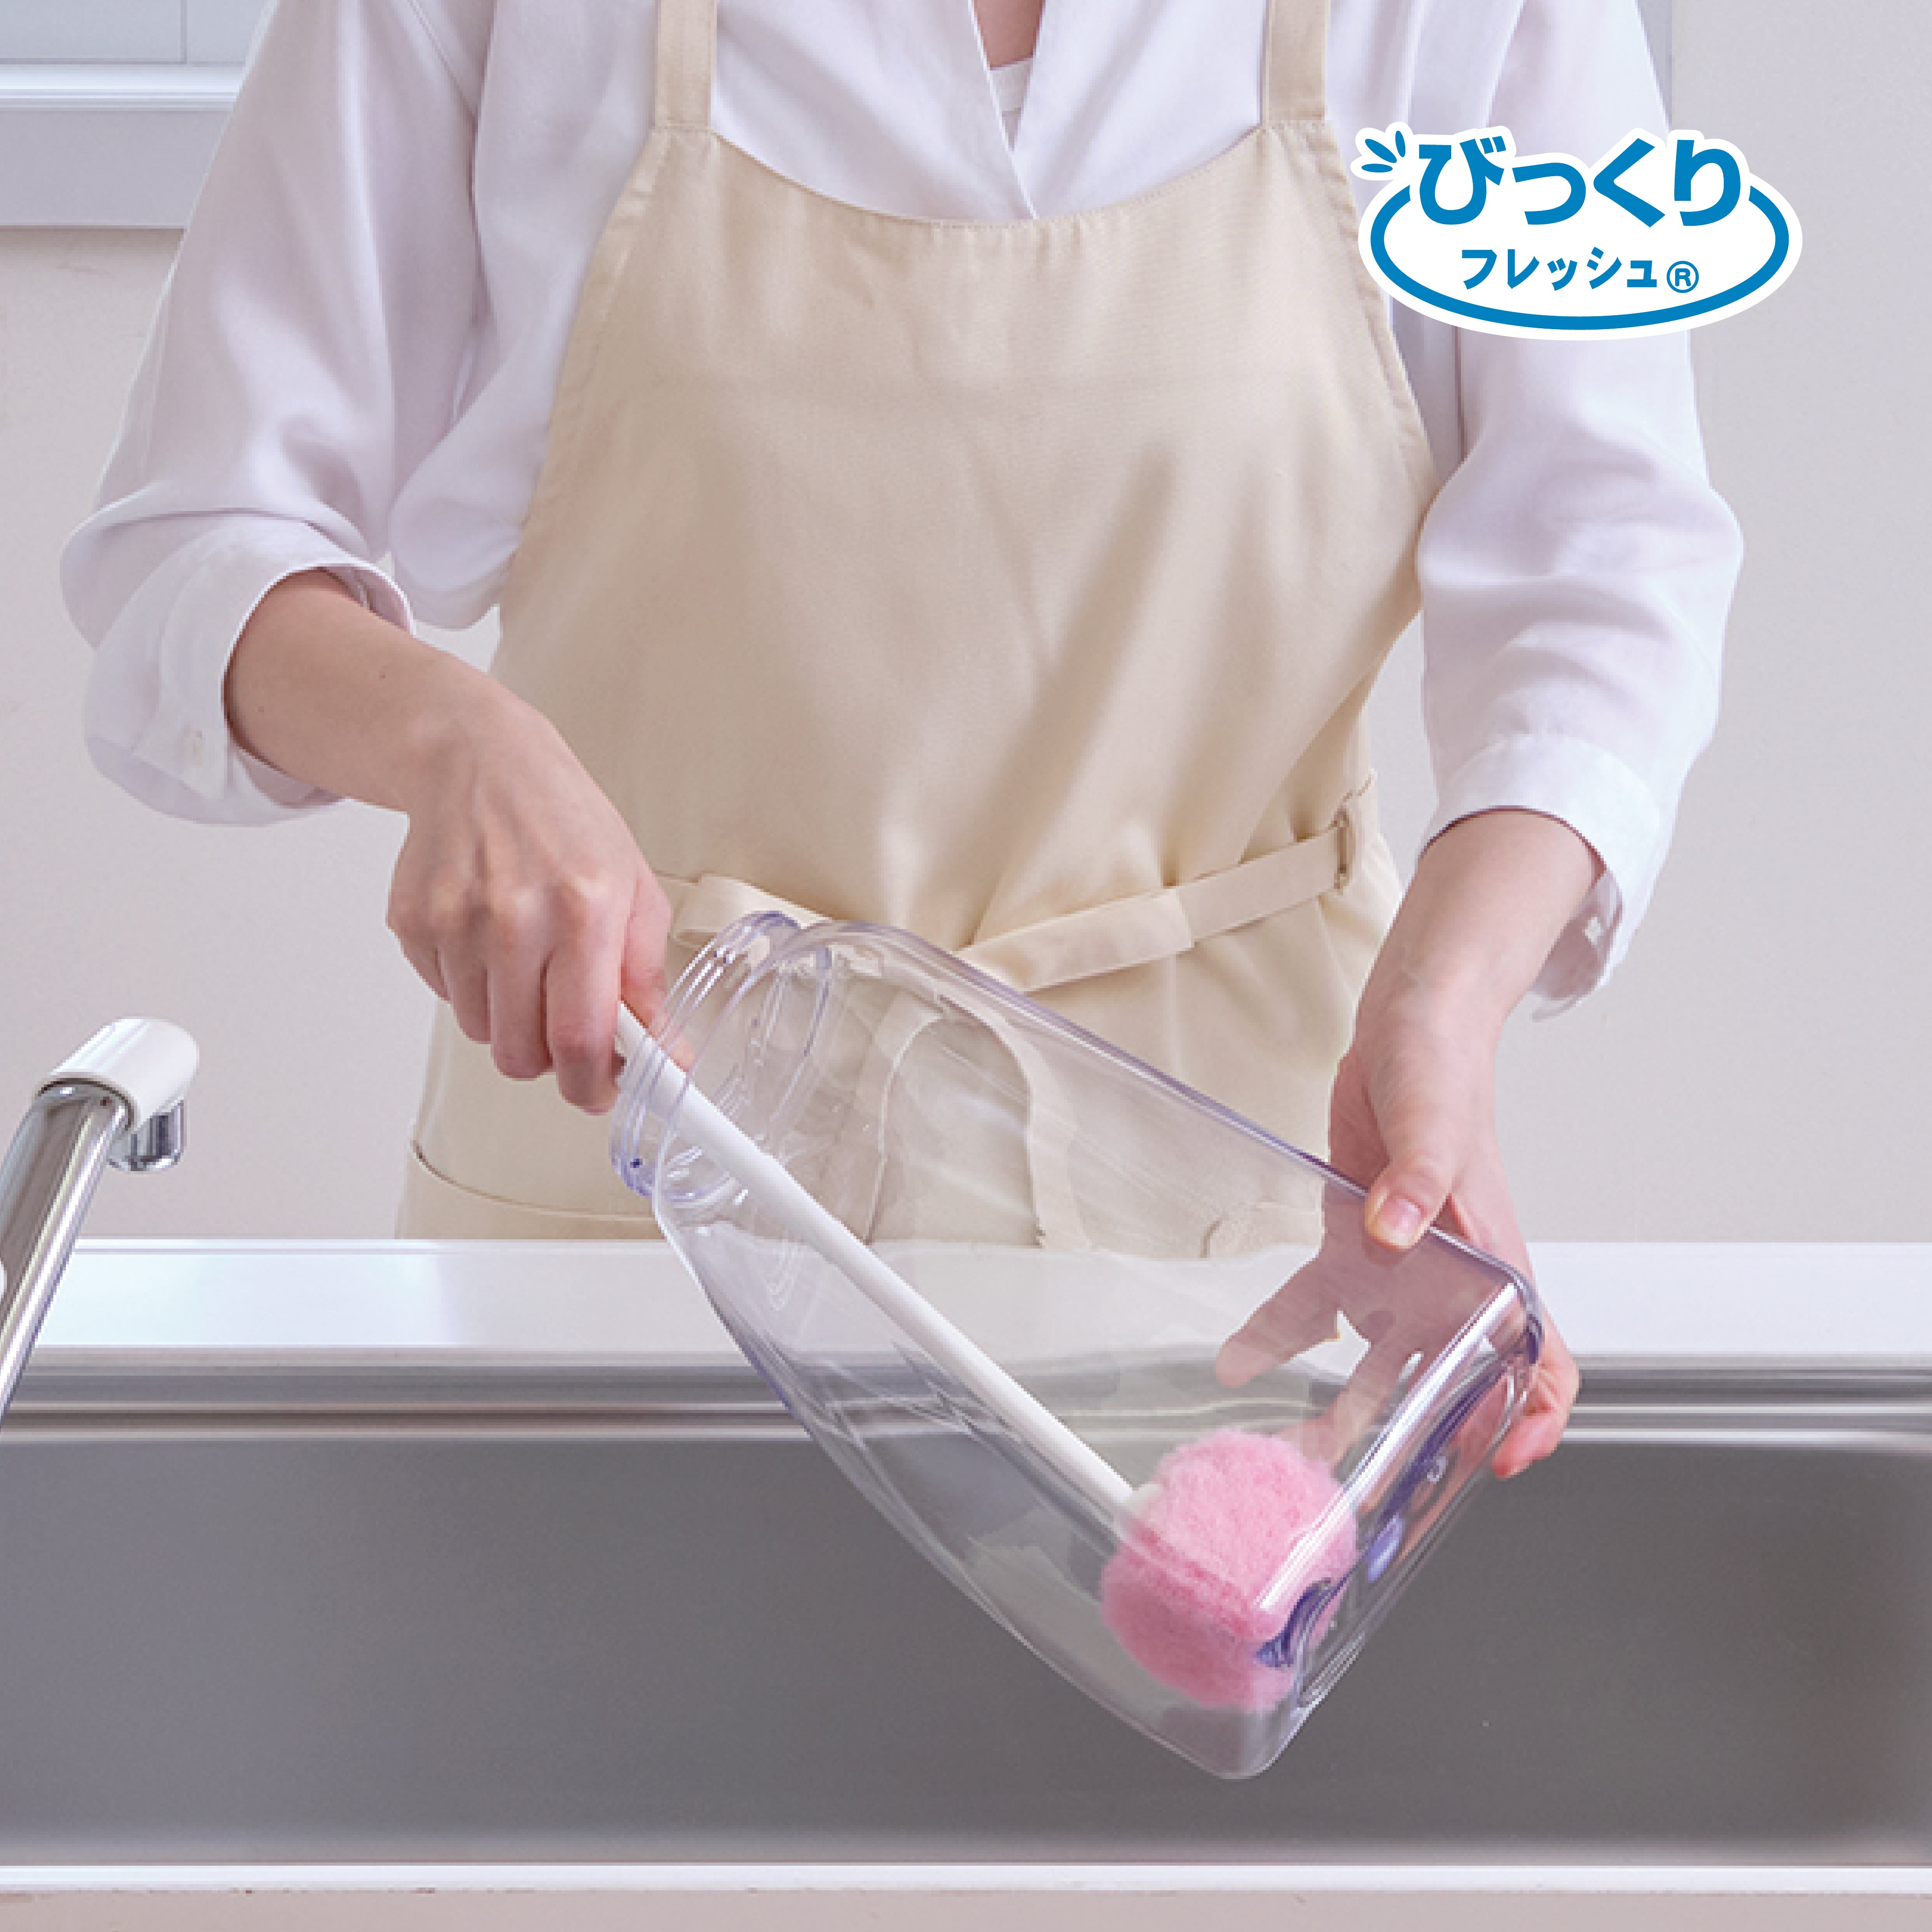 ボトル洗い クリーナー 冷水筒 ブラシ 日本製 ピカピカ びっくりフレッシュ サンコー